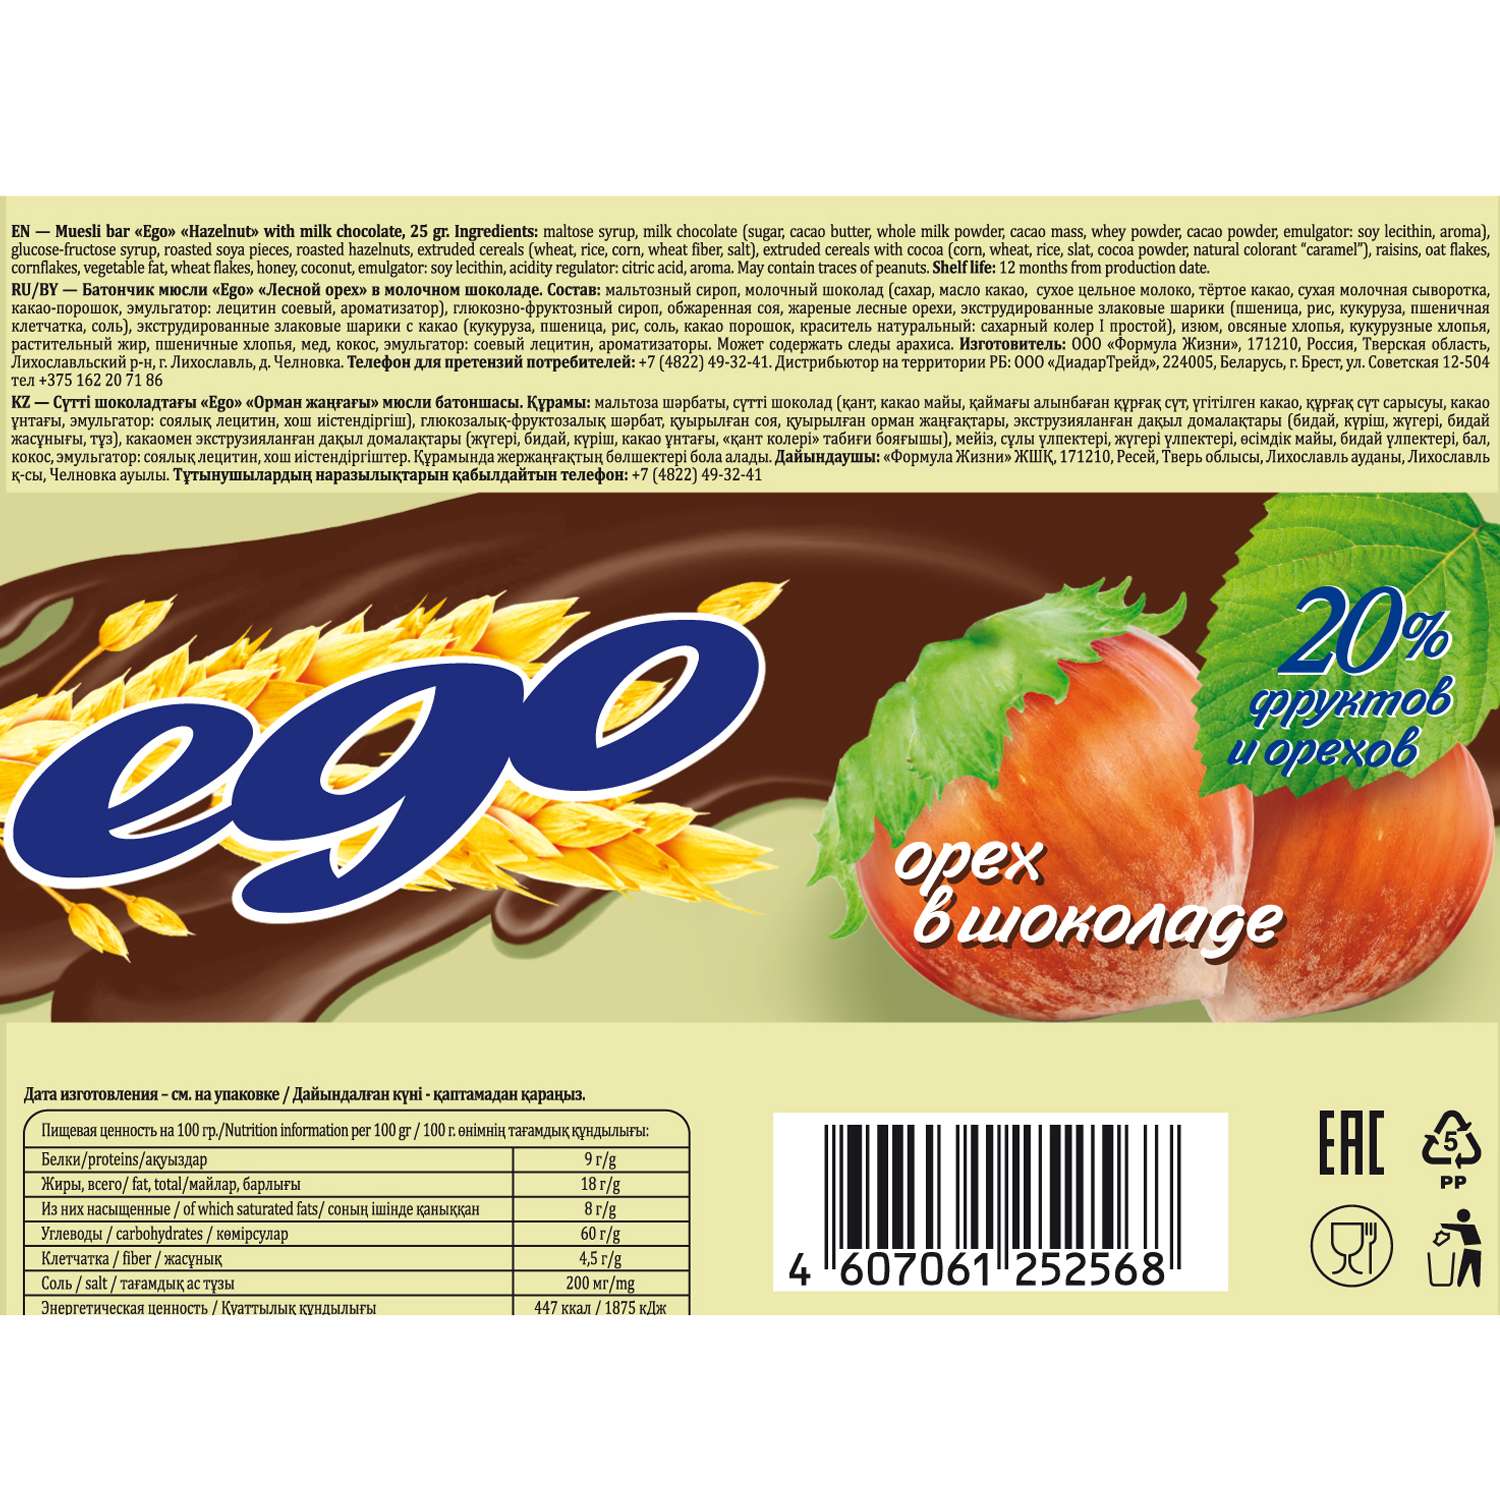 Батончики мюсли Ego орех в шоколаде 25г - фото 2